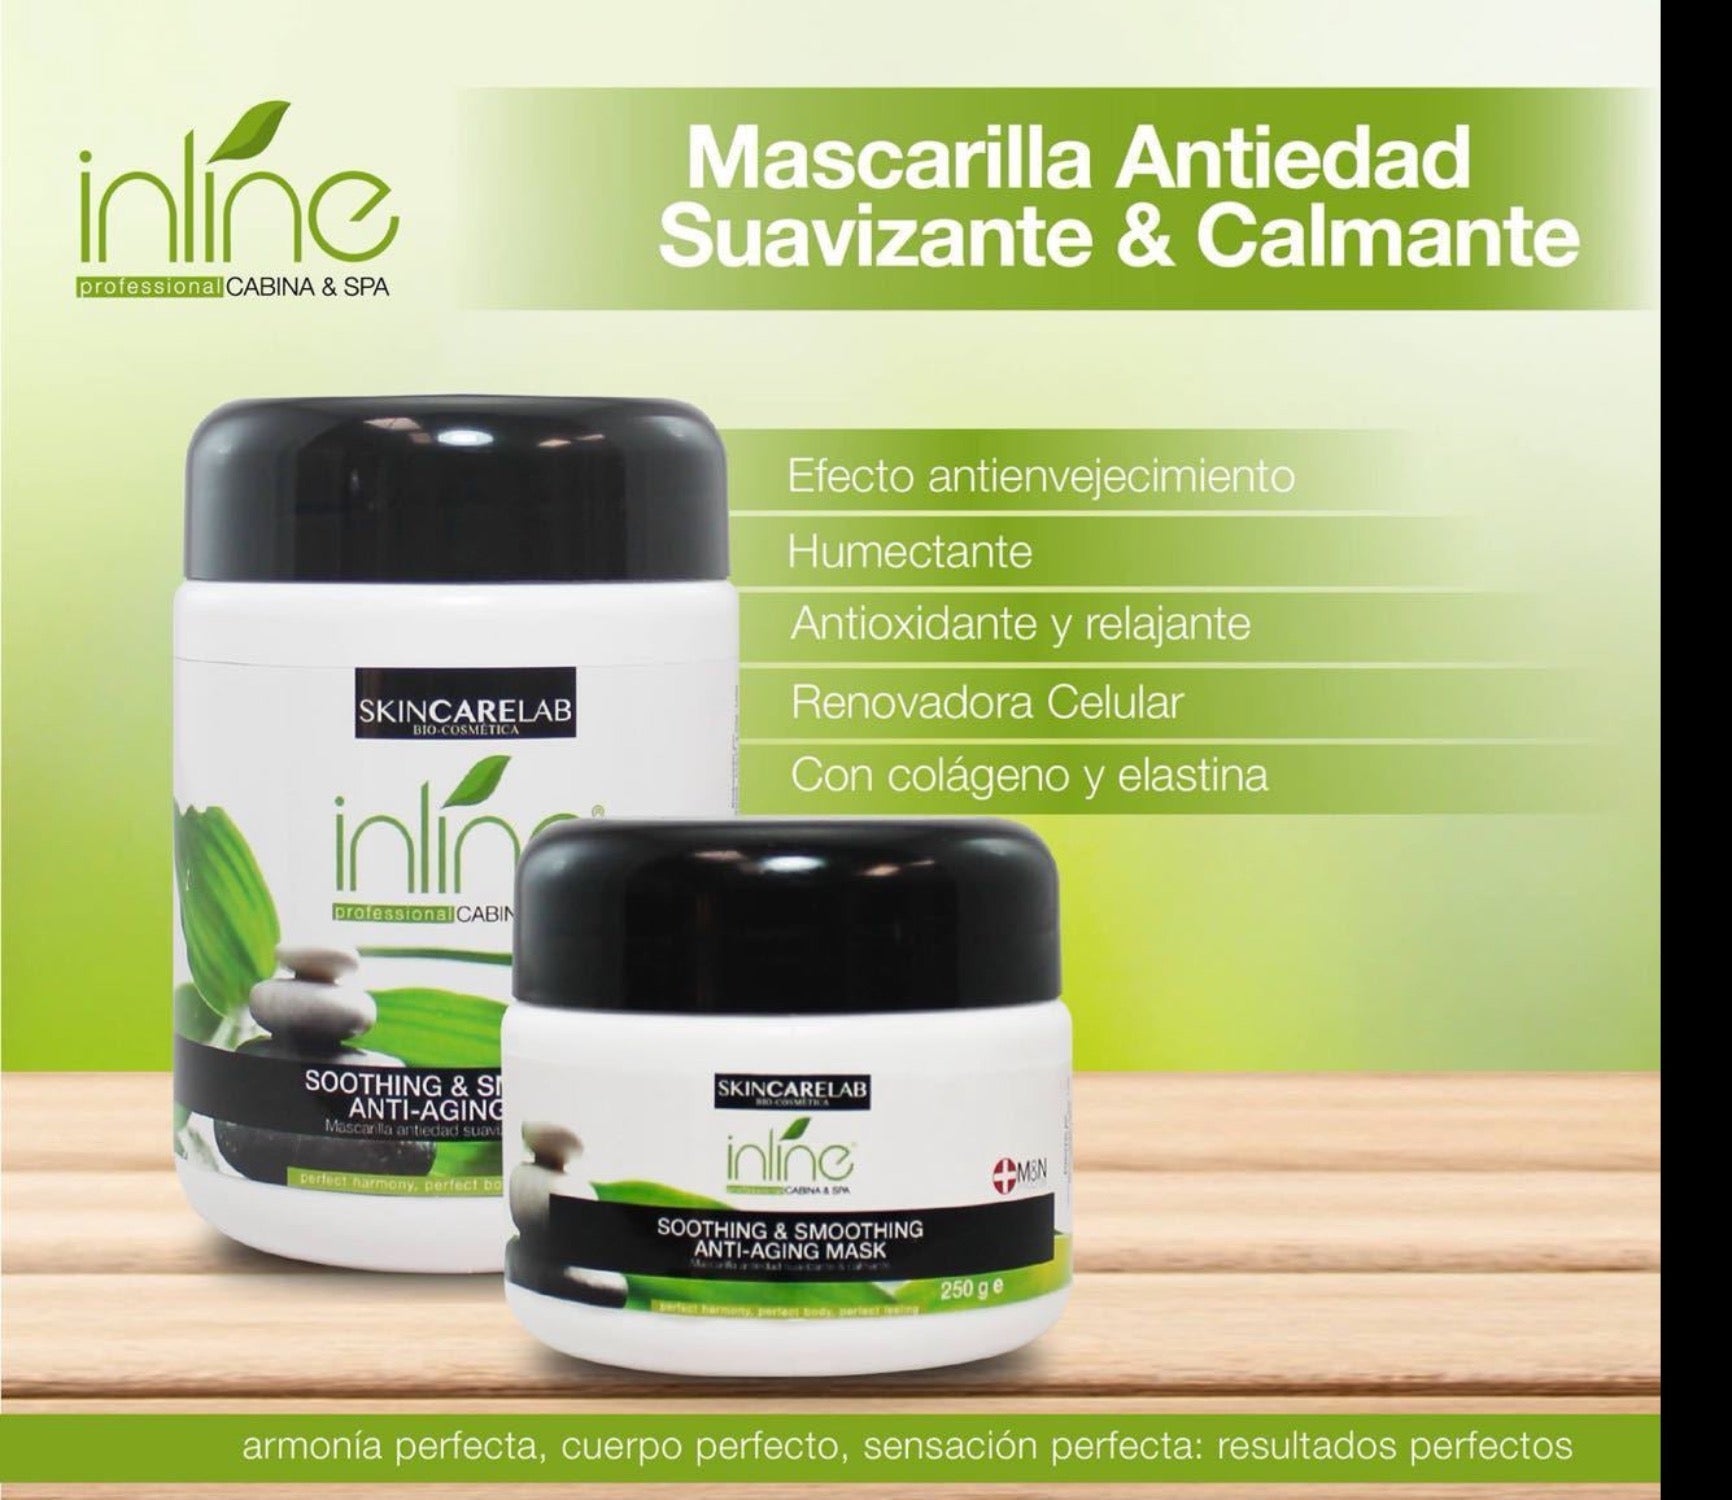 Mascarilla antiedad suavizante & calmante Inline® de acción suavizante, hidratante, humectante y sensación de bienestar.